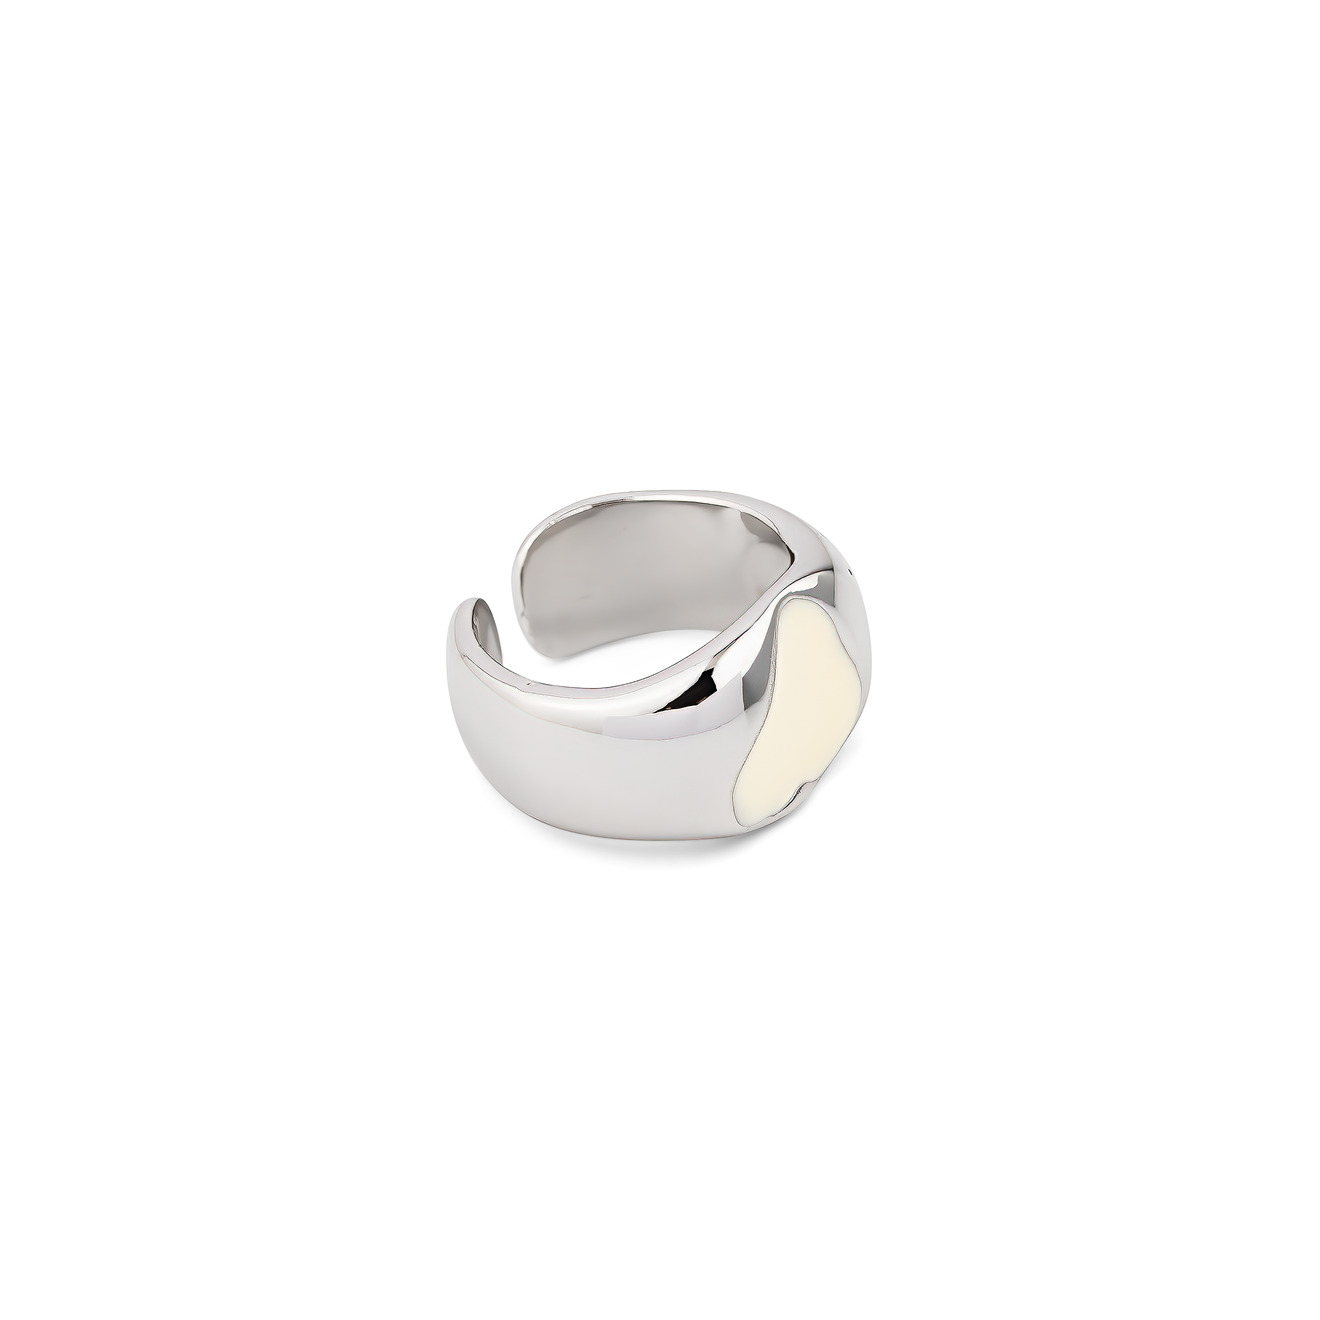 Free Form Jewelry Кольцо серебристое с белым сердечком кольцо free form jewelry серебристое узкое дутое 1 шт